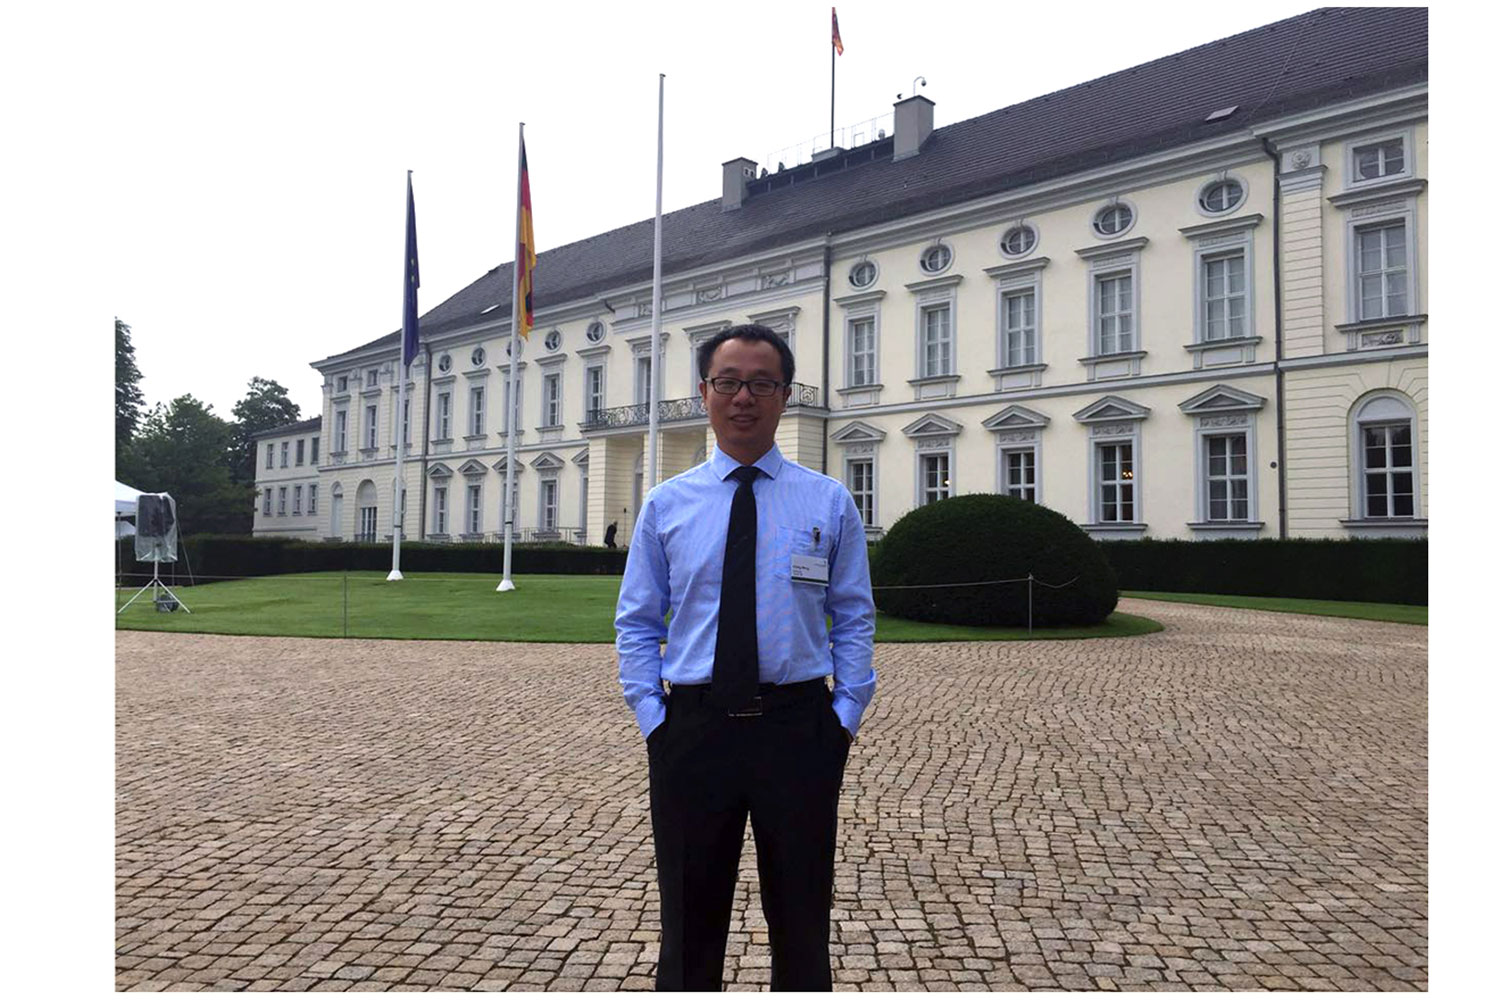 Zu sehen ist der Stipendiat Chong Wang in Berlin.